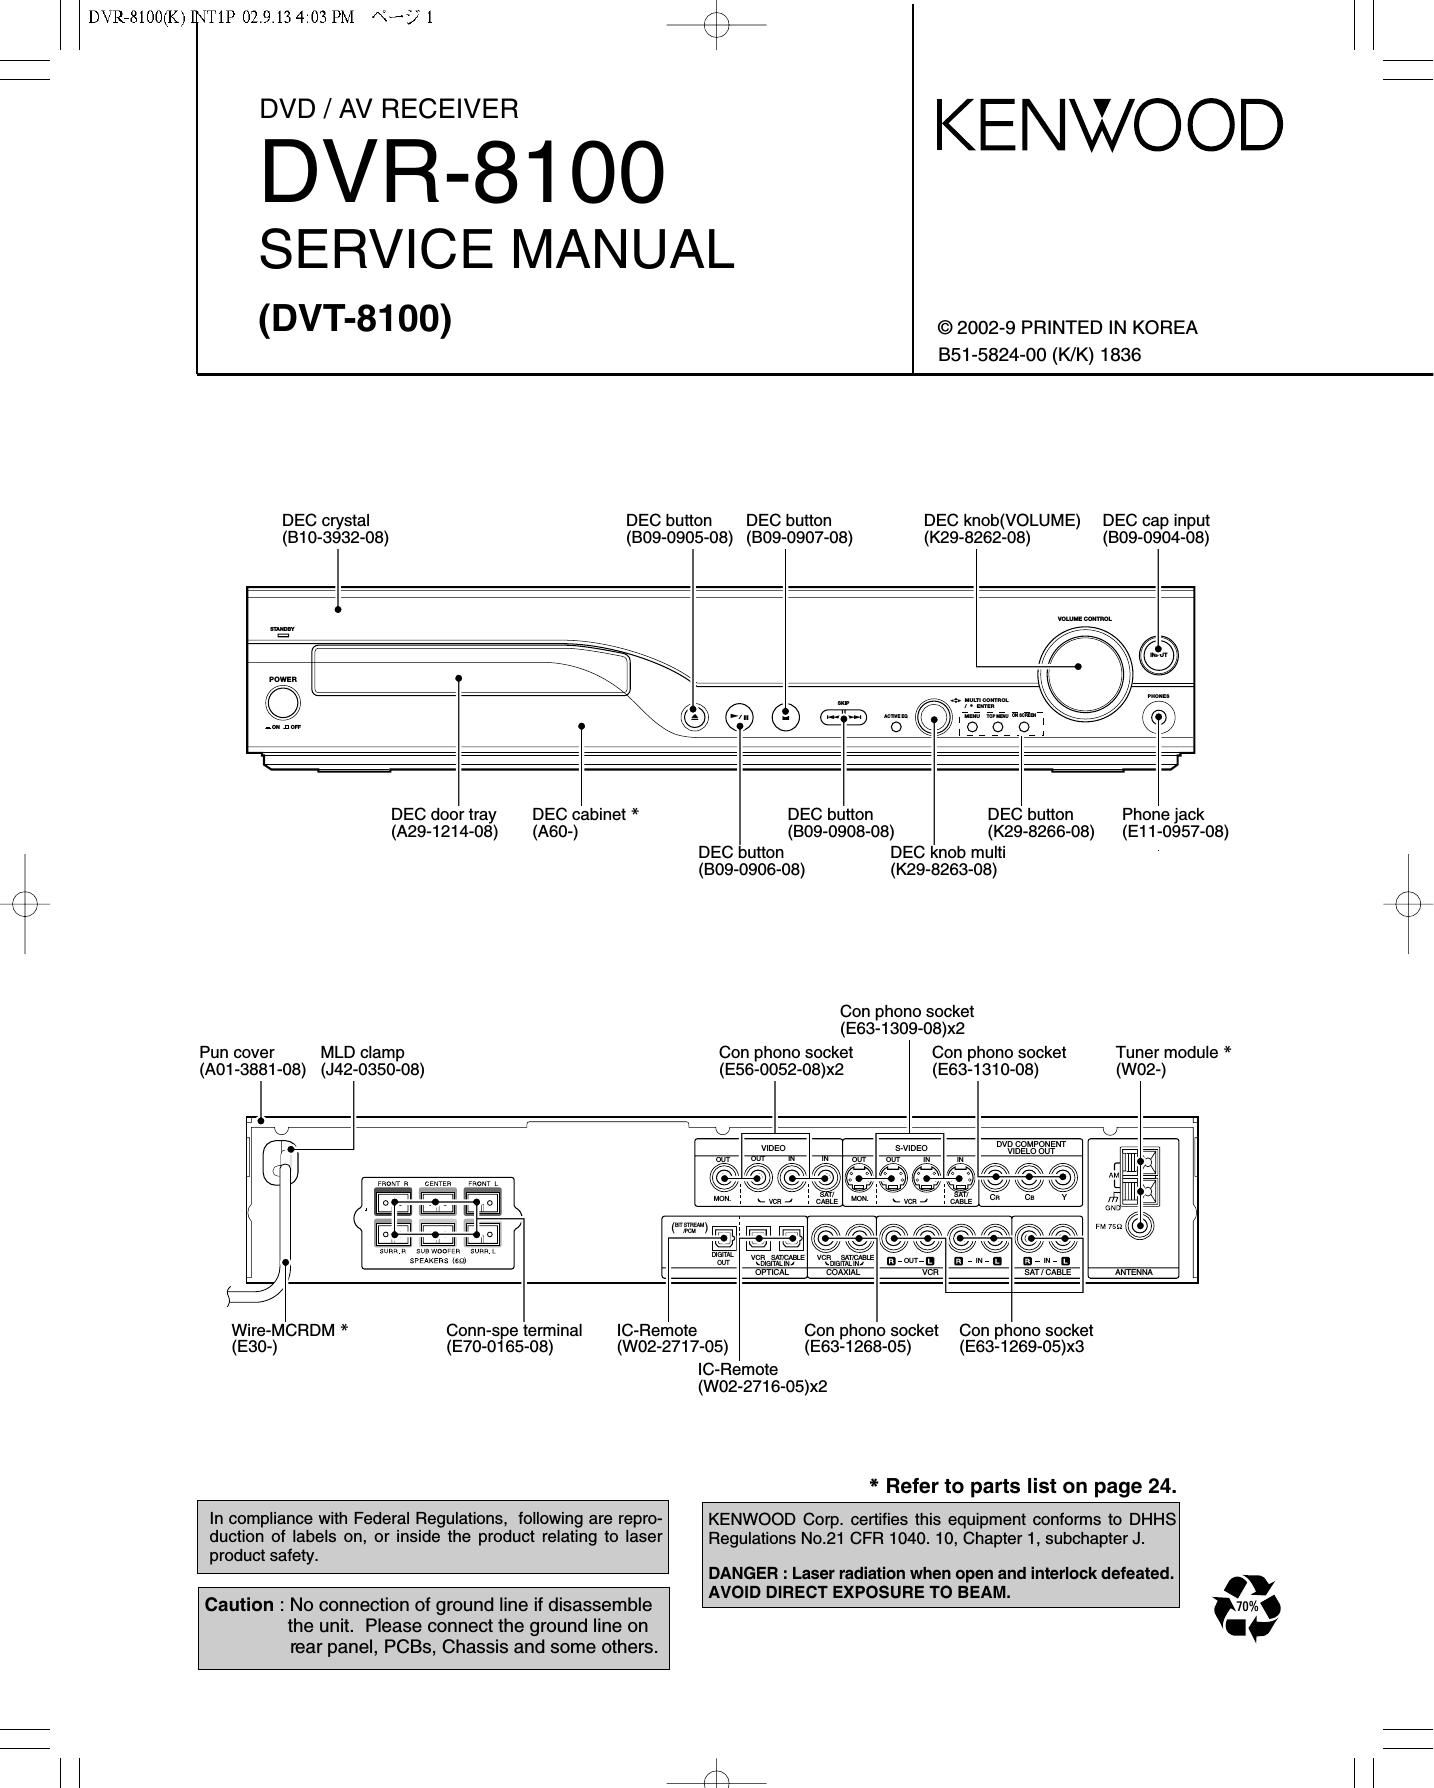 Kenwood DVR 8100 Service Manual